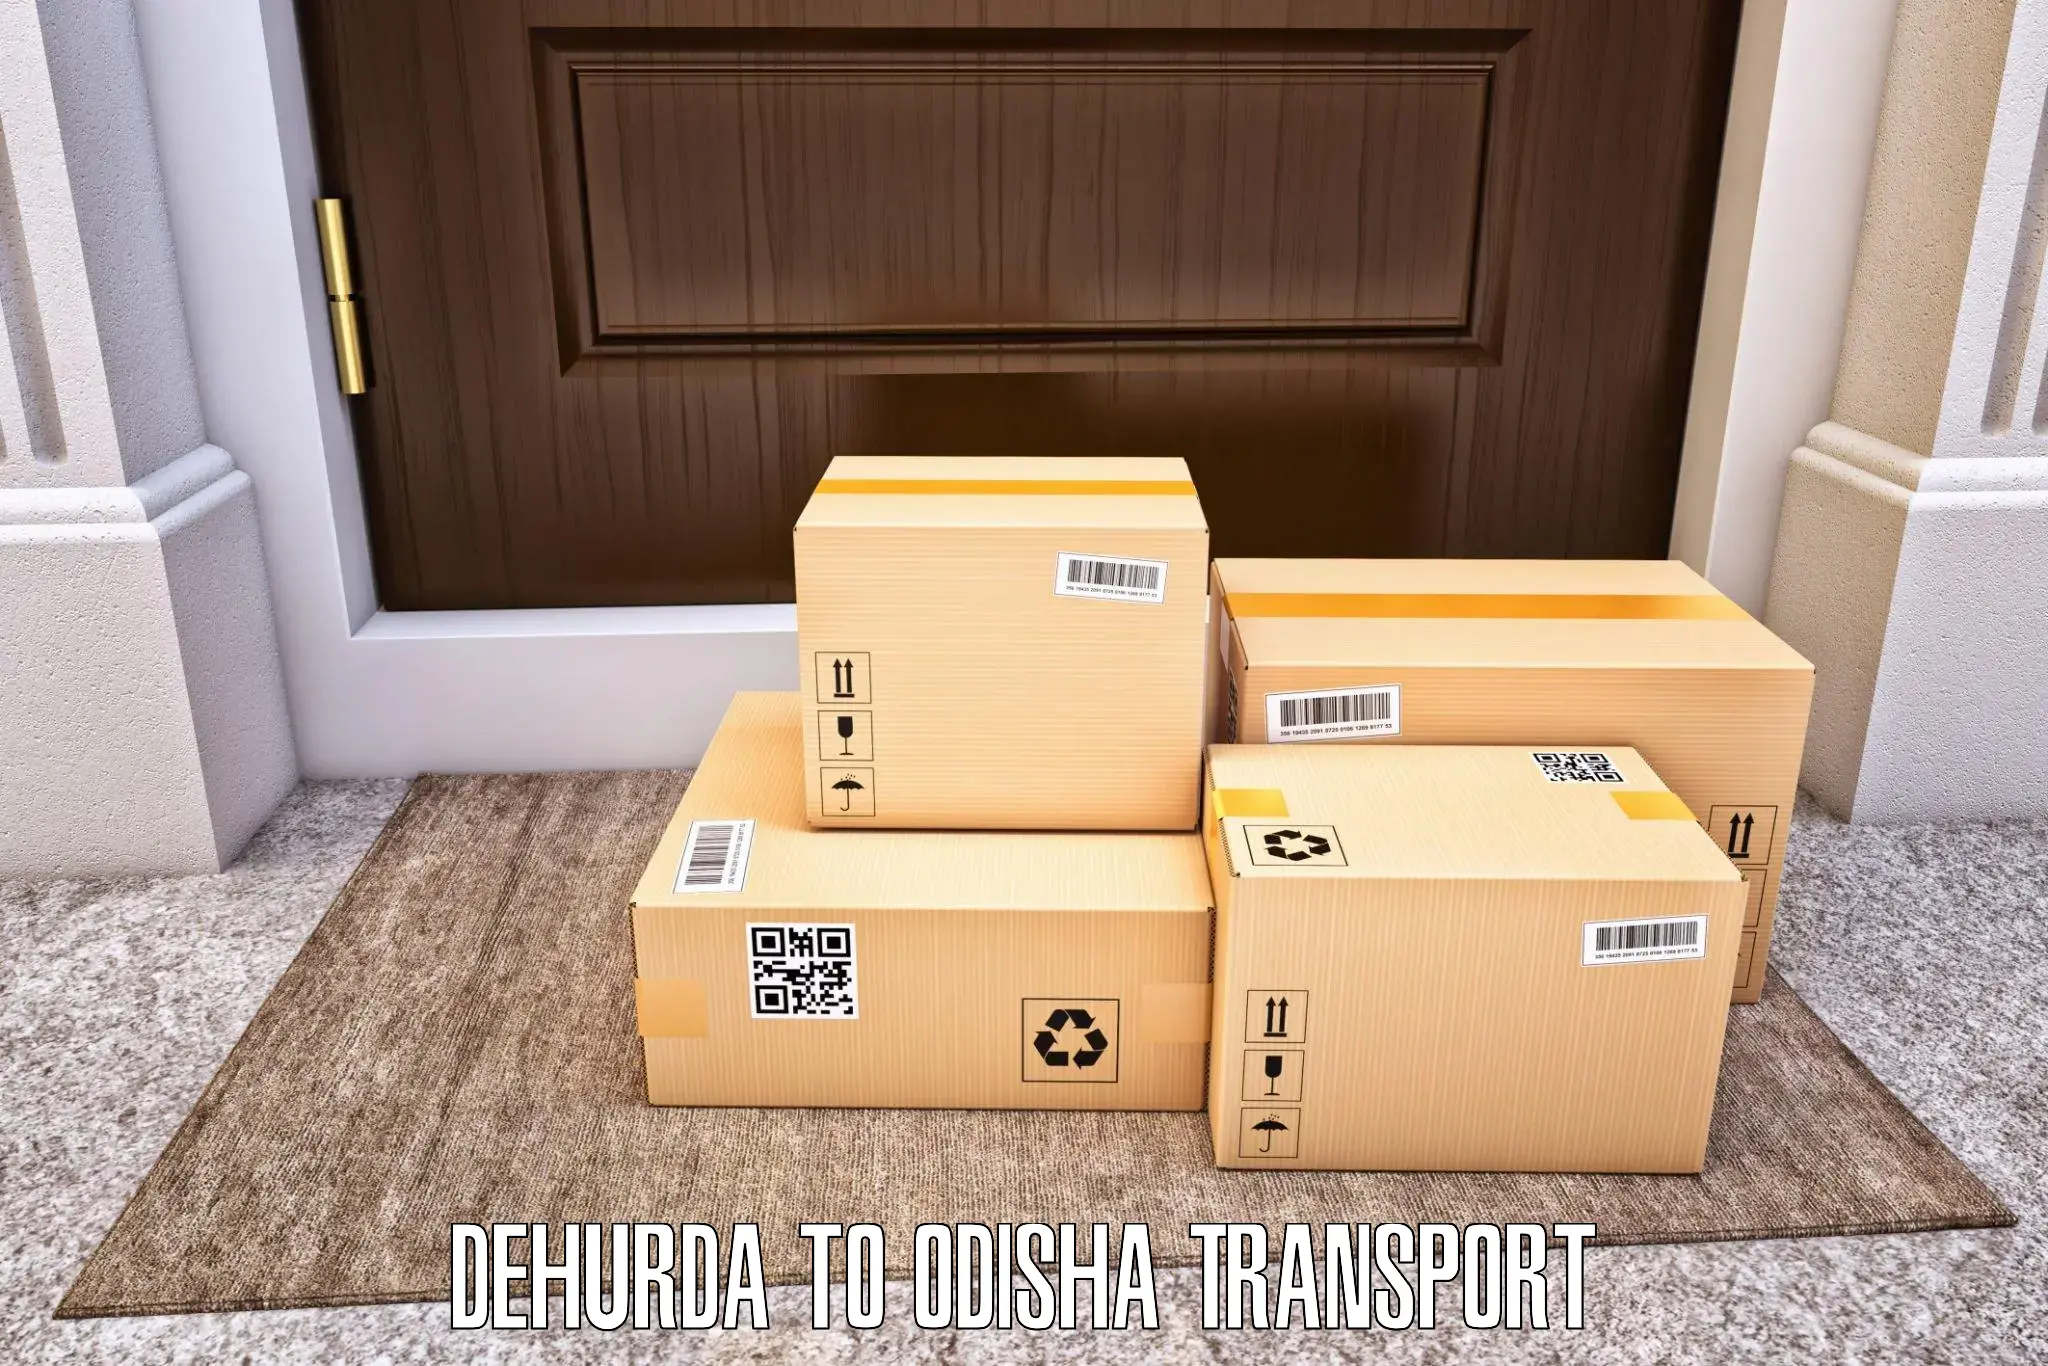 Delivery service Dehurda to IIT Bhubaneshwar